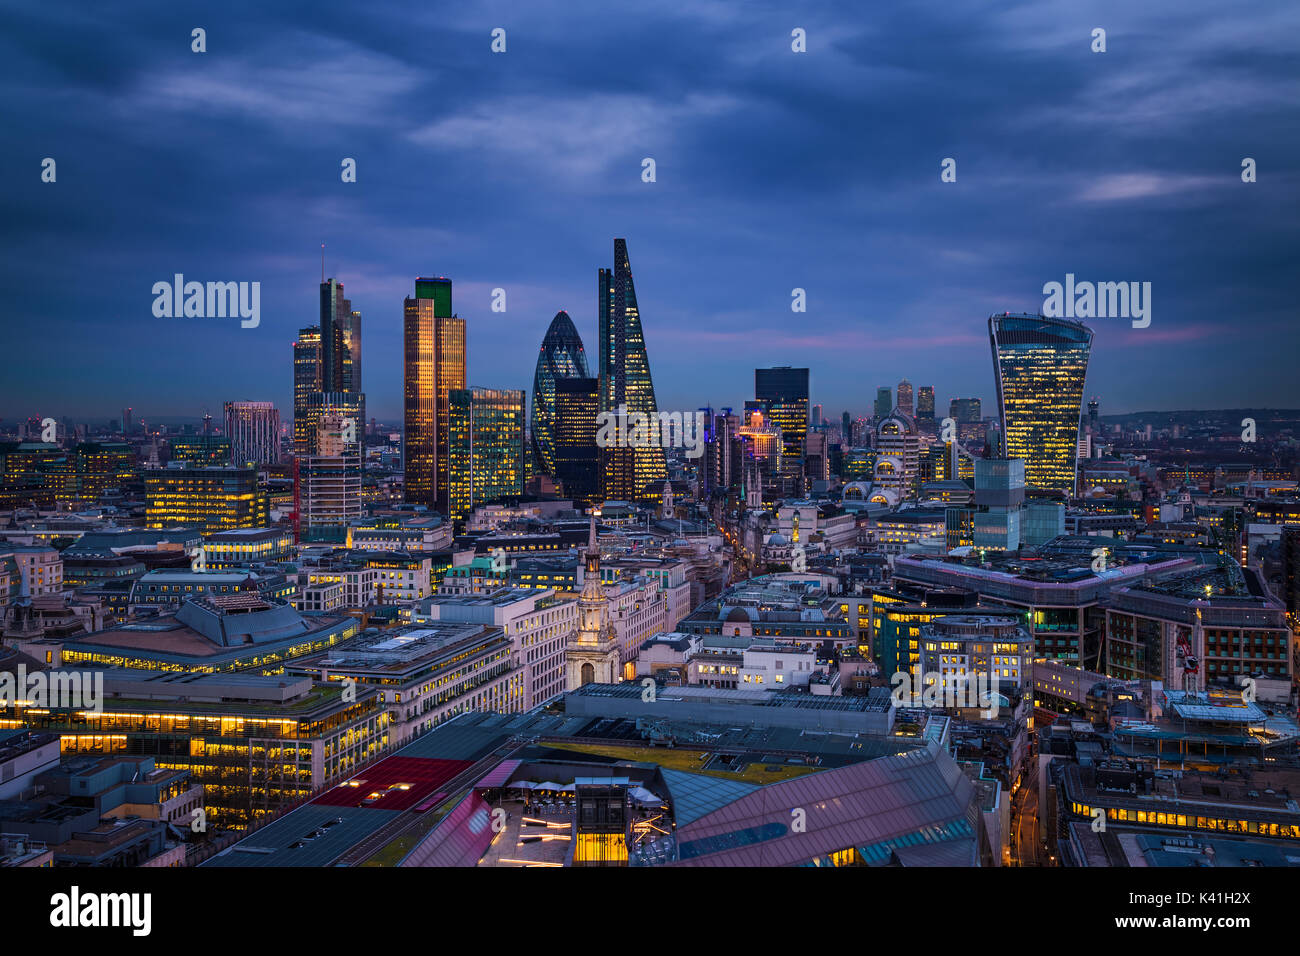 Londra, Inghilterra - panoramico vista dello skyline di Banca del distretto di Londra con i grattacieli di Canary Wharf in background all'ora blu Foto Stock